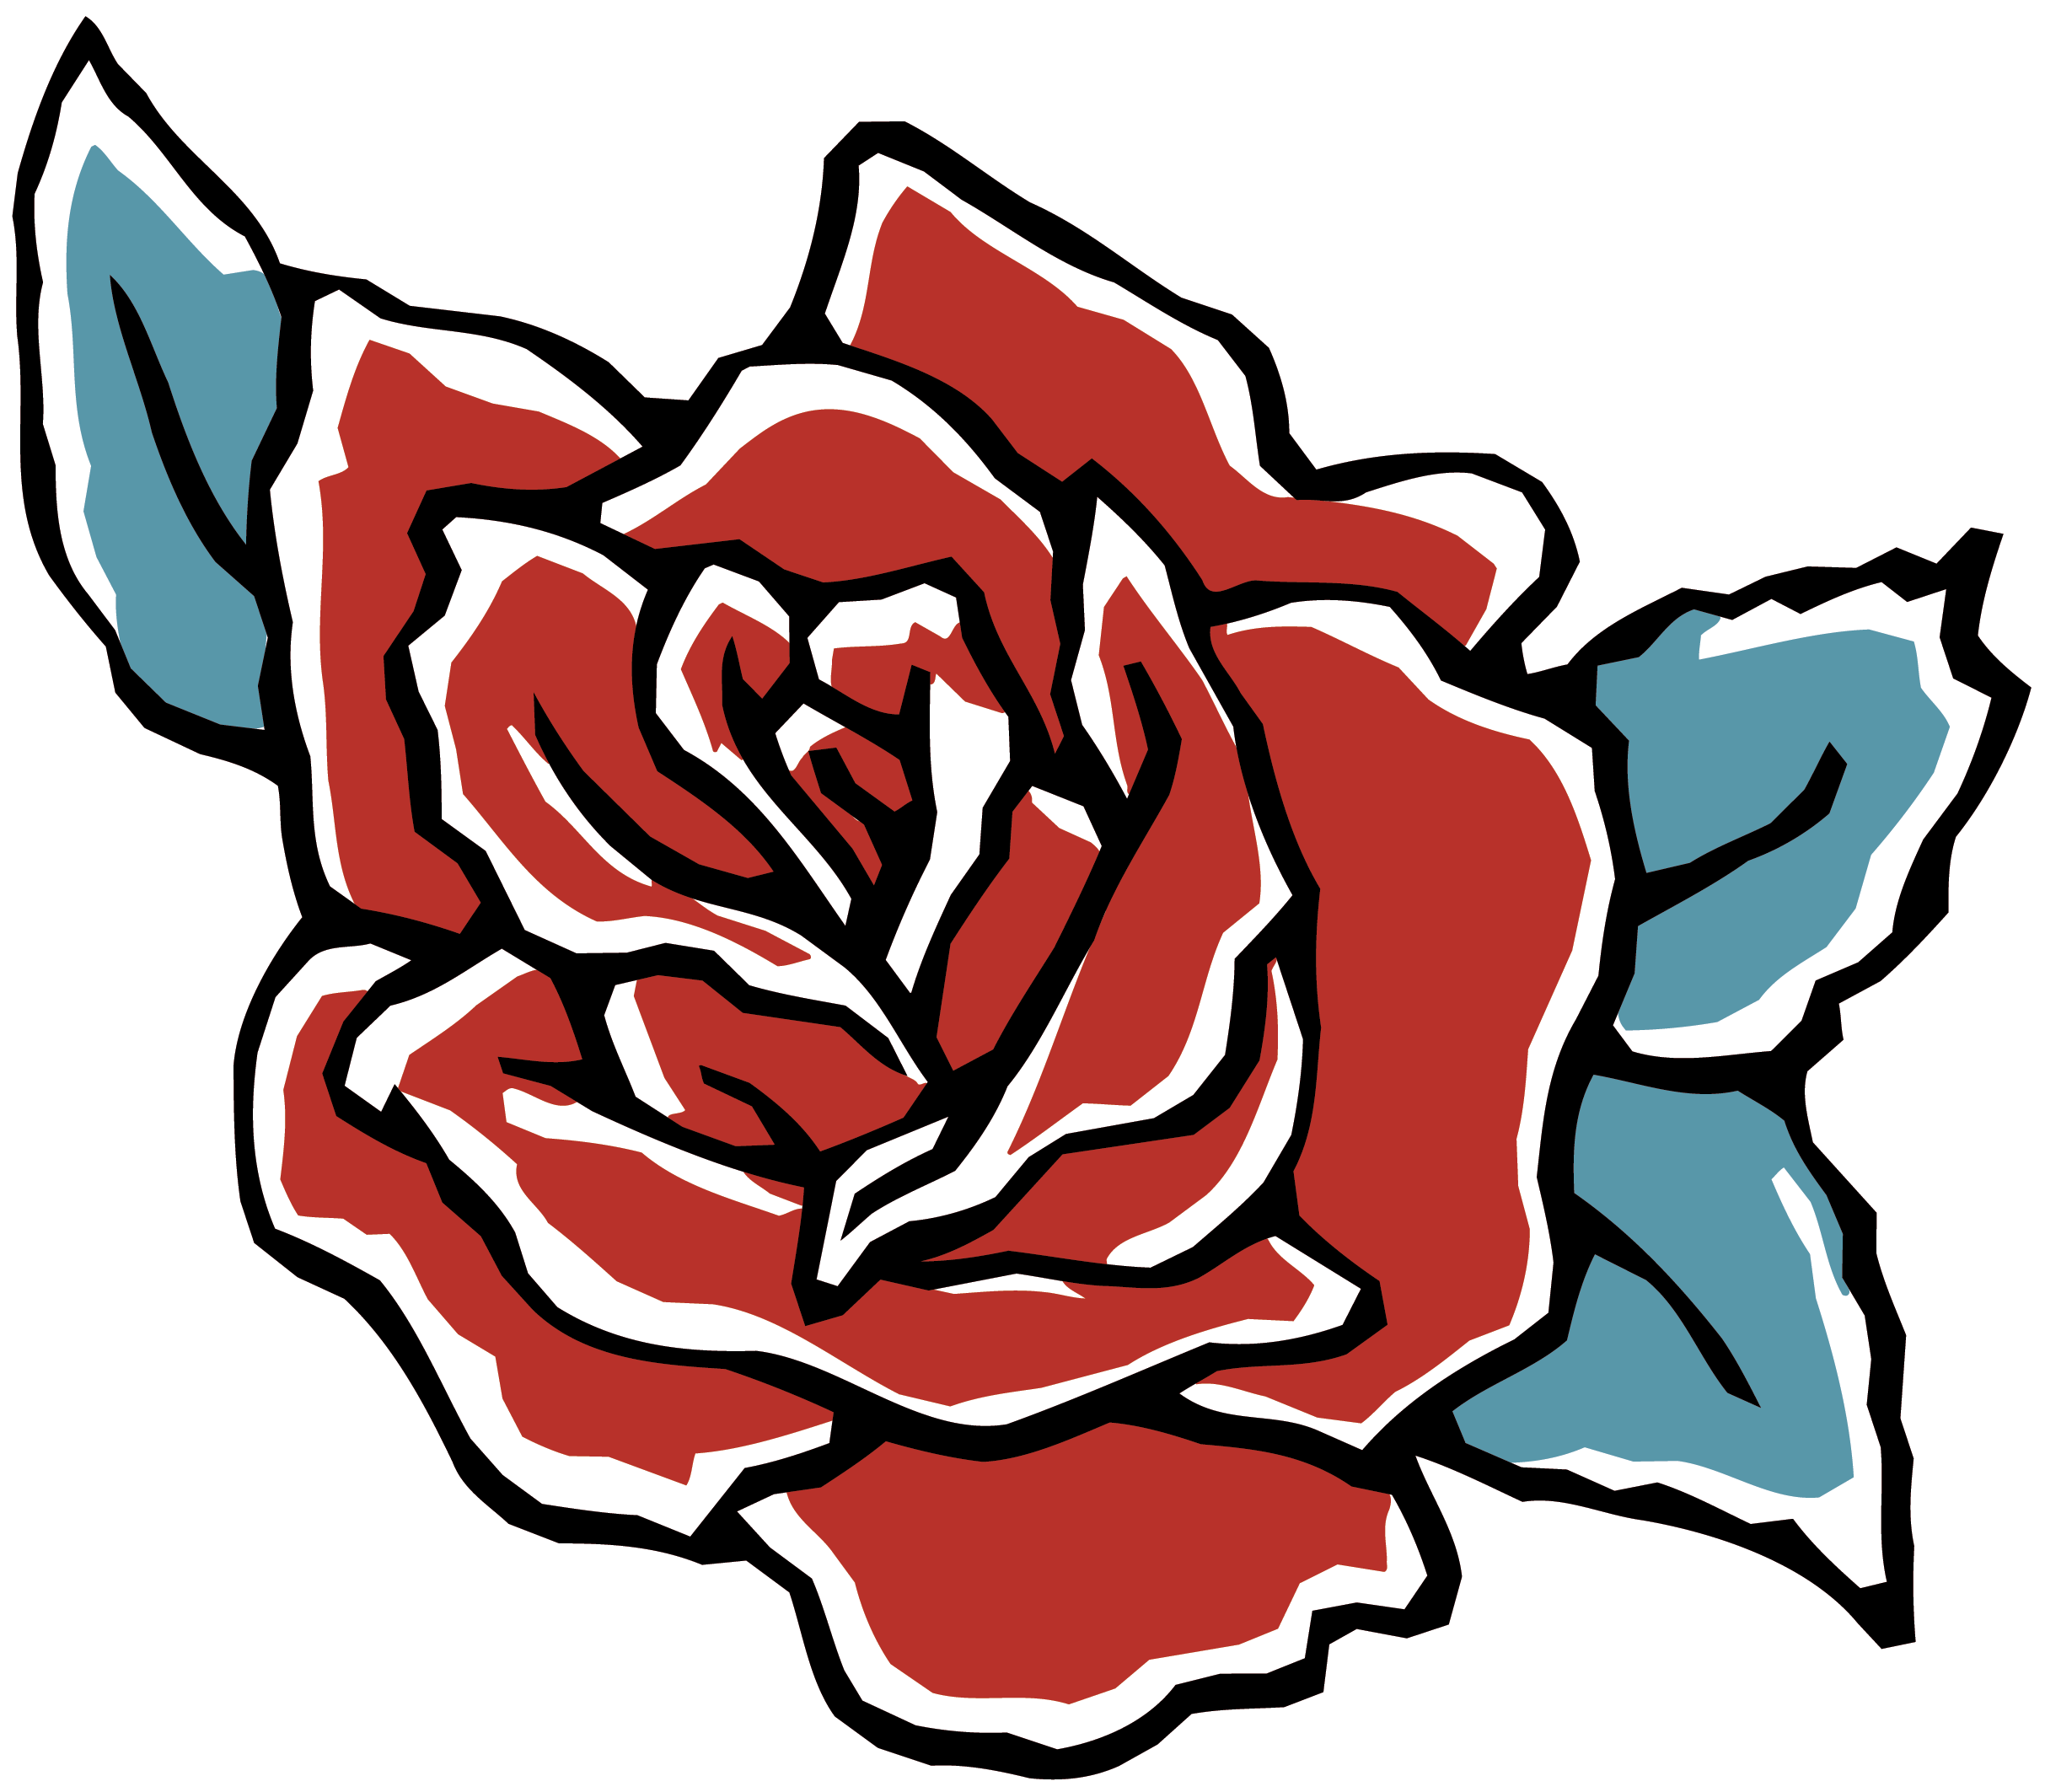 Garden Roses Beach Rose Petal Flower Clip Art - Garden Roses Beach Rose Petal Flower Clip Art (2426x2126)